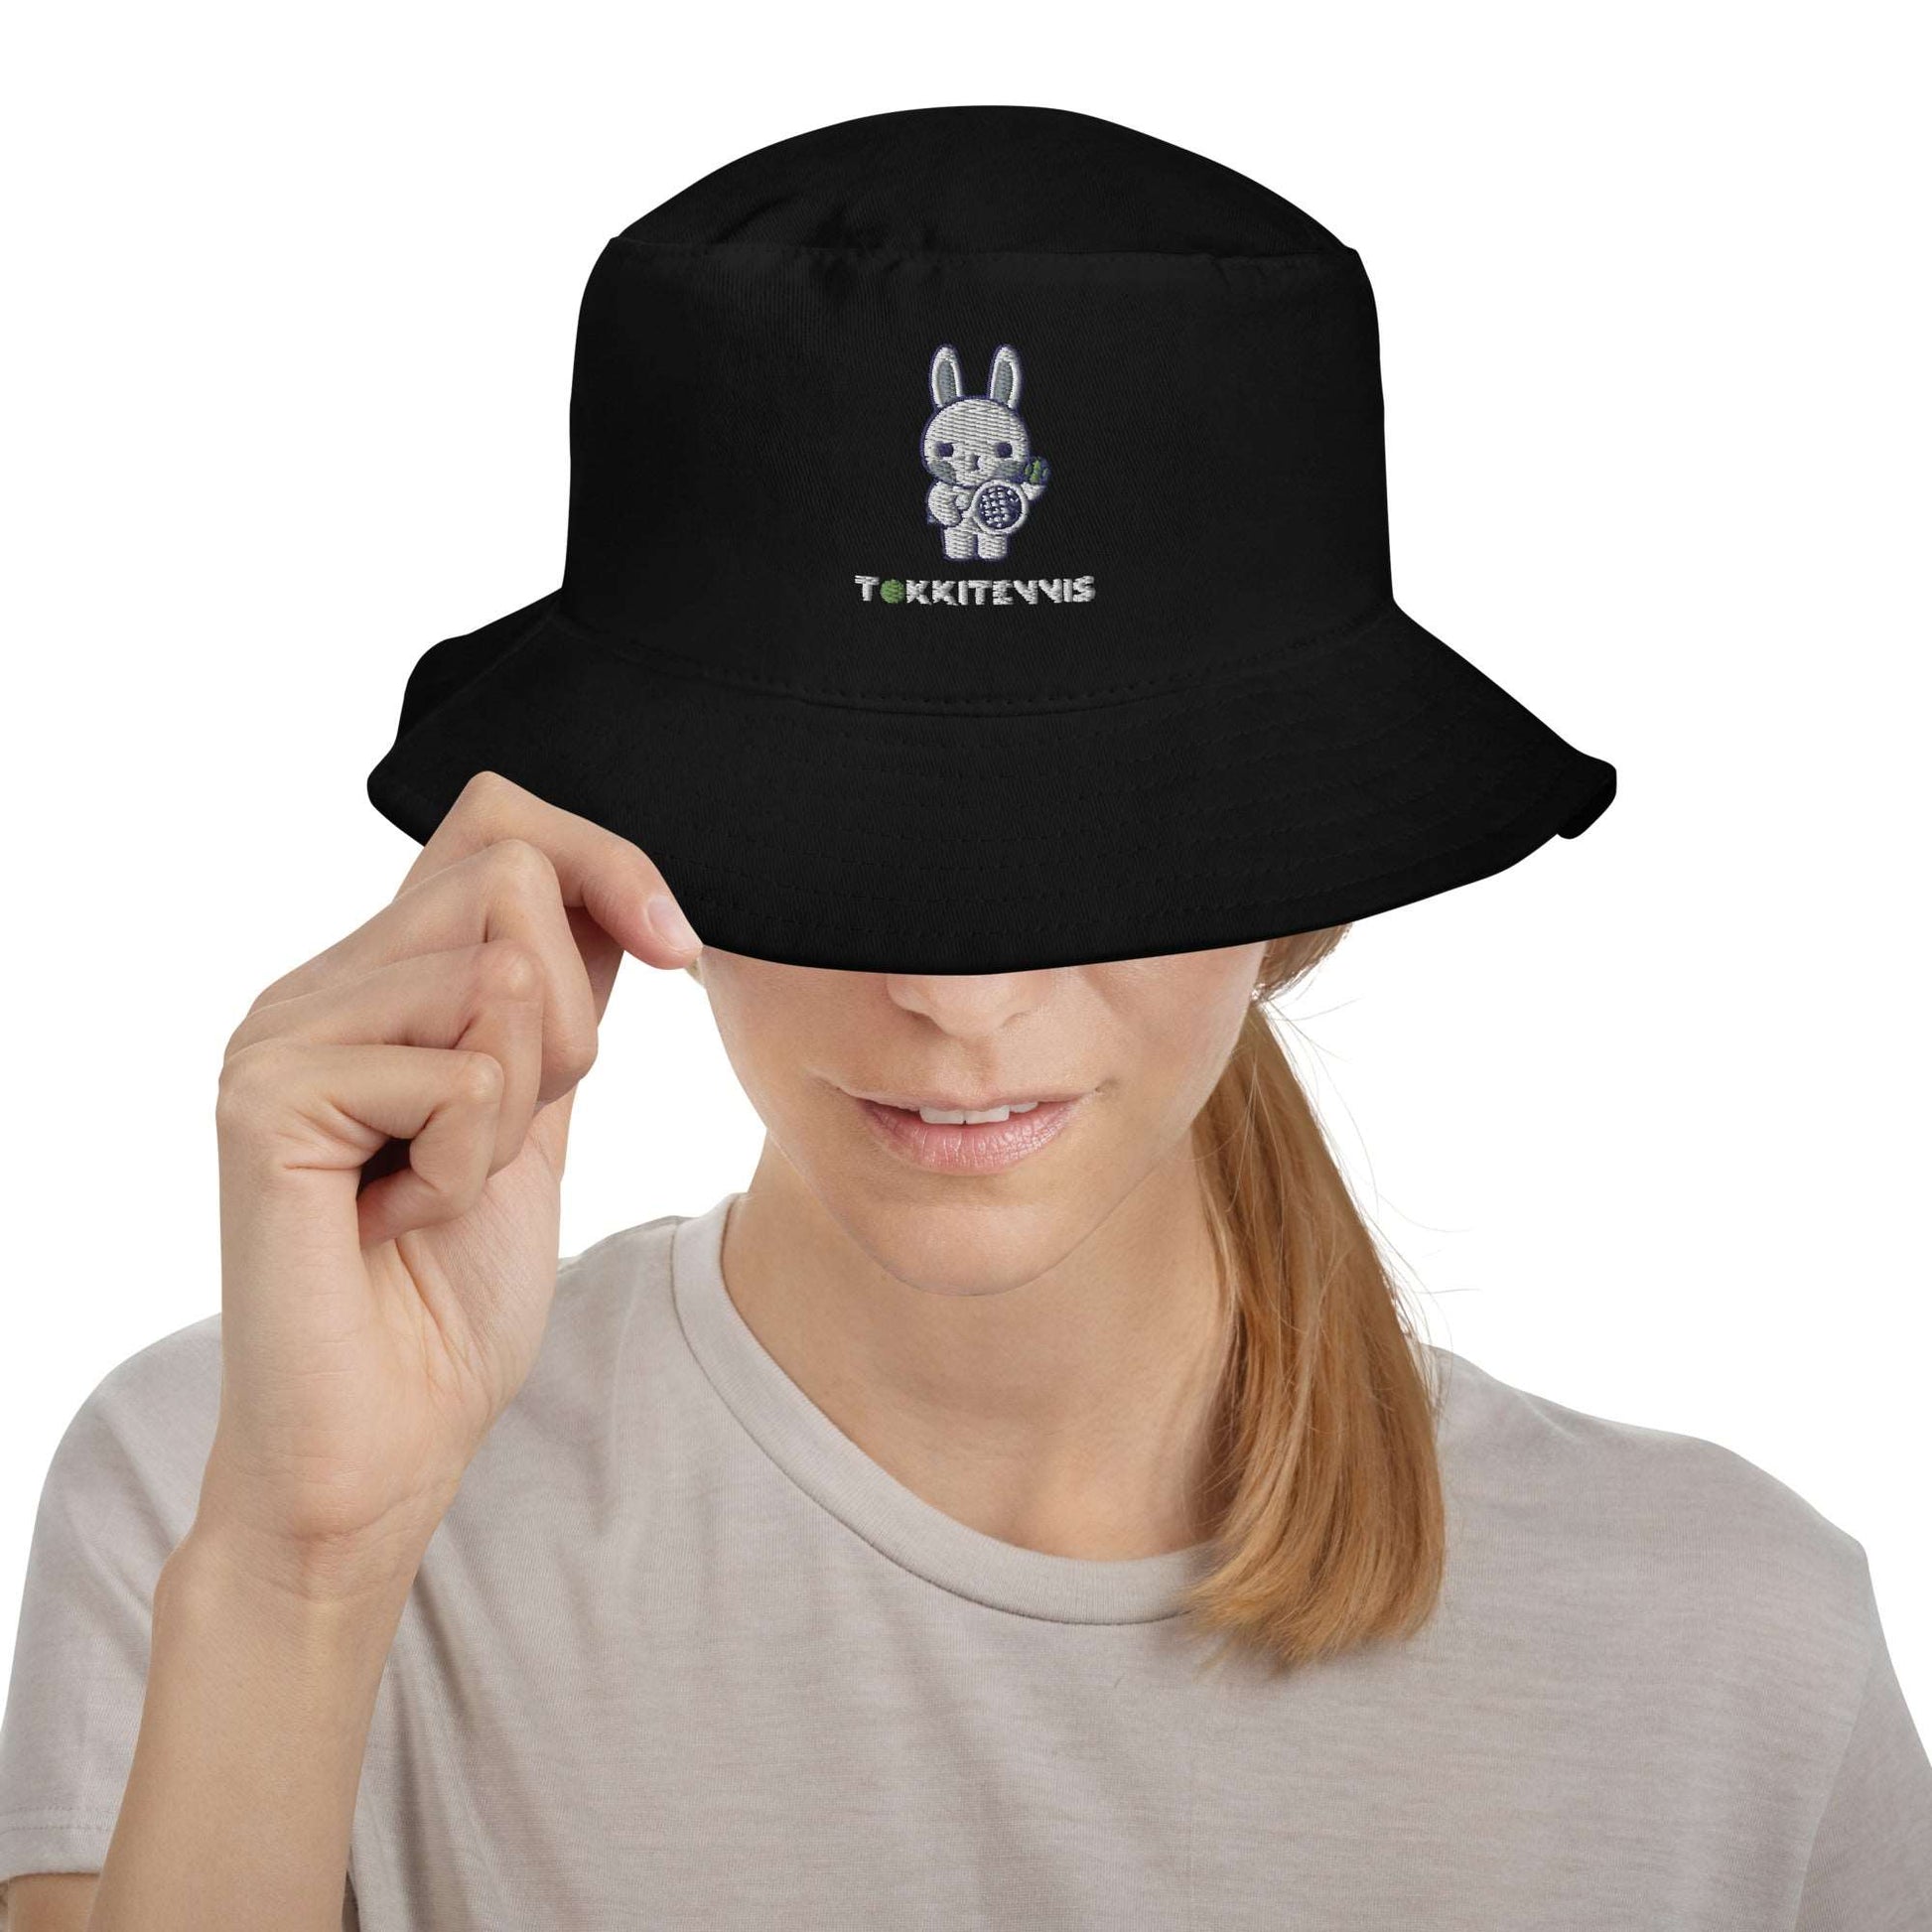 Emma Bucket Hat - Black or Navy - TOKKITENNIS